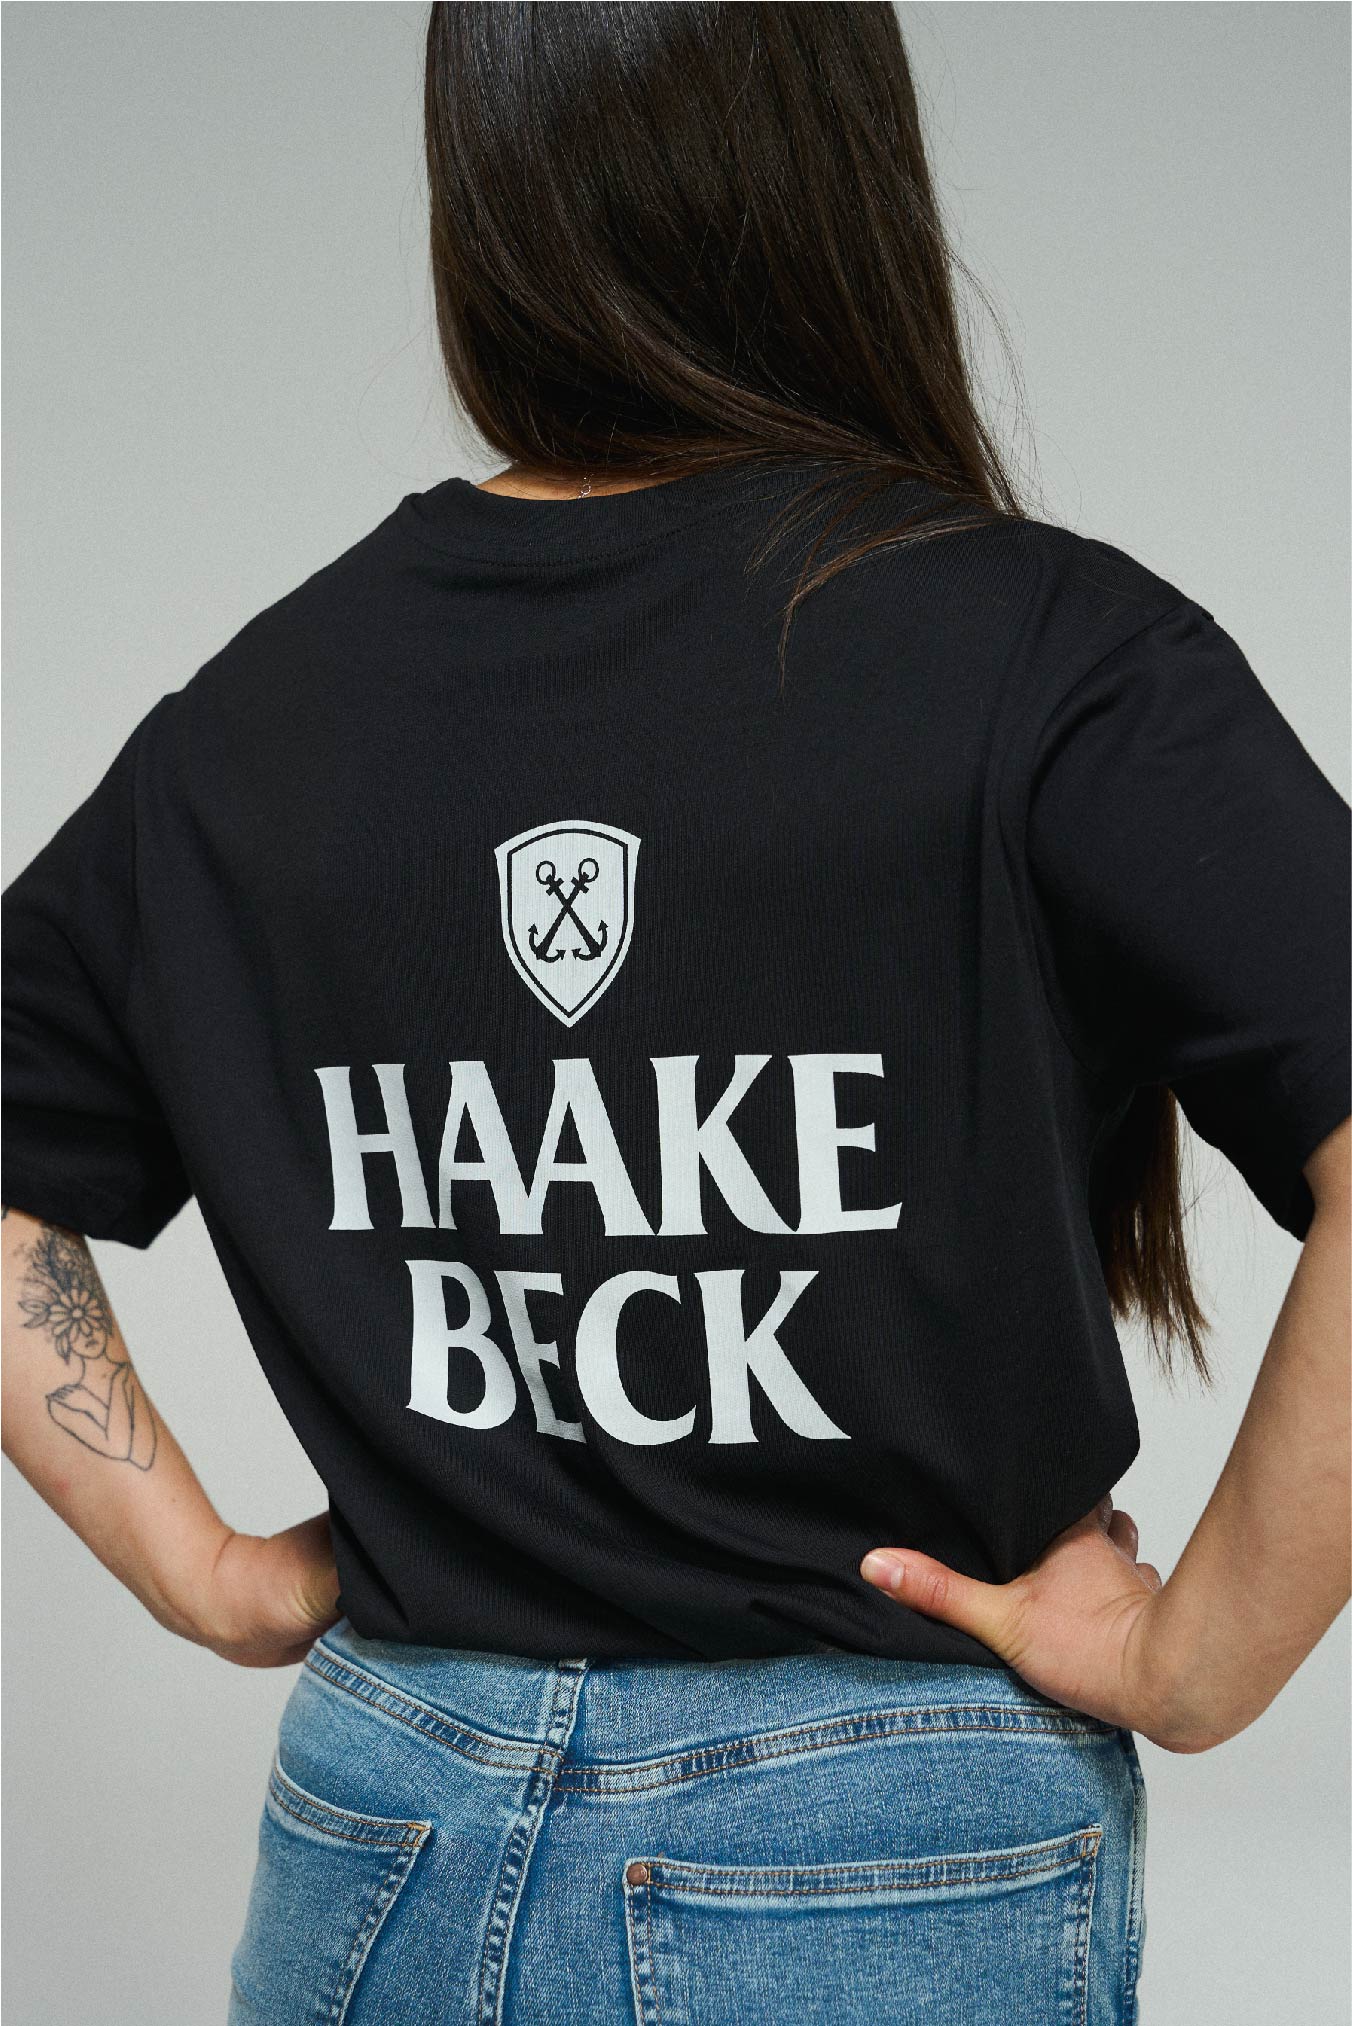 Haake-Beck Adress-Shirt